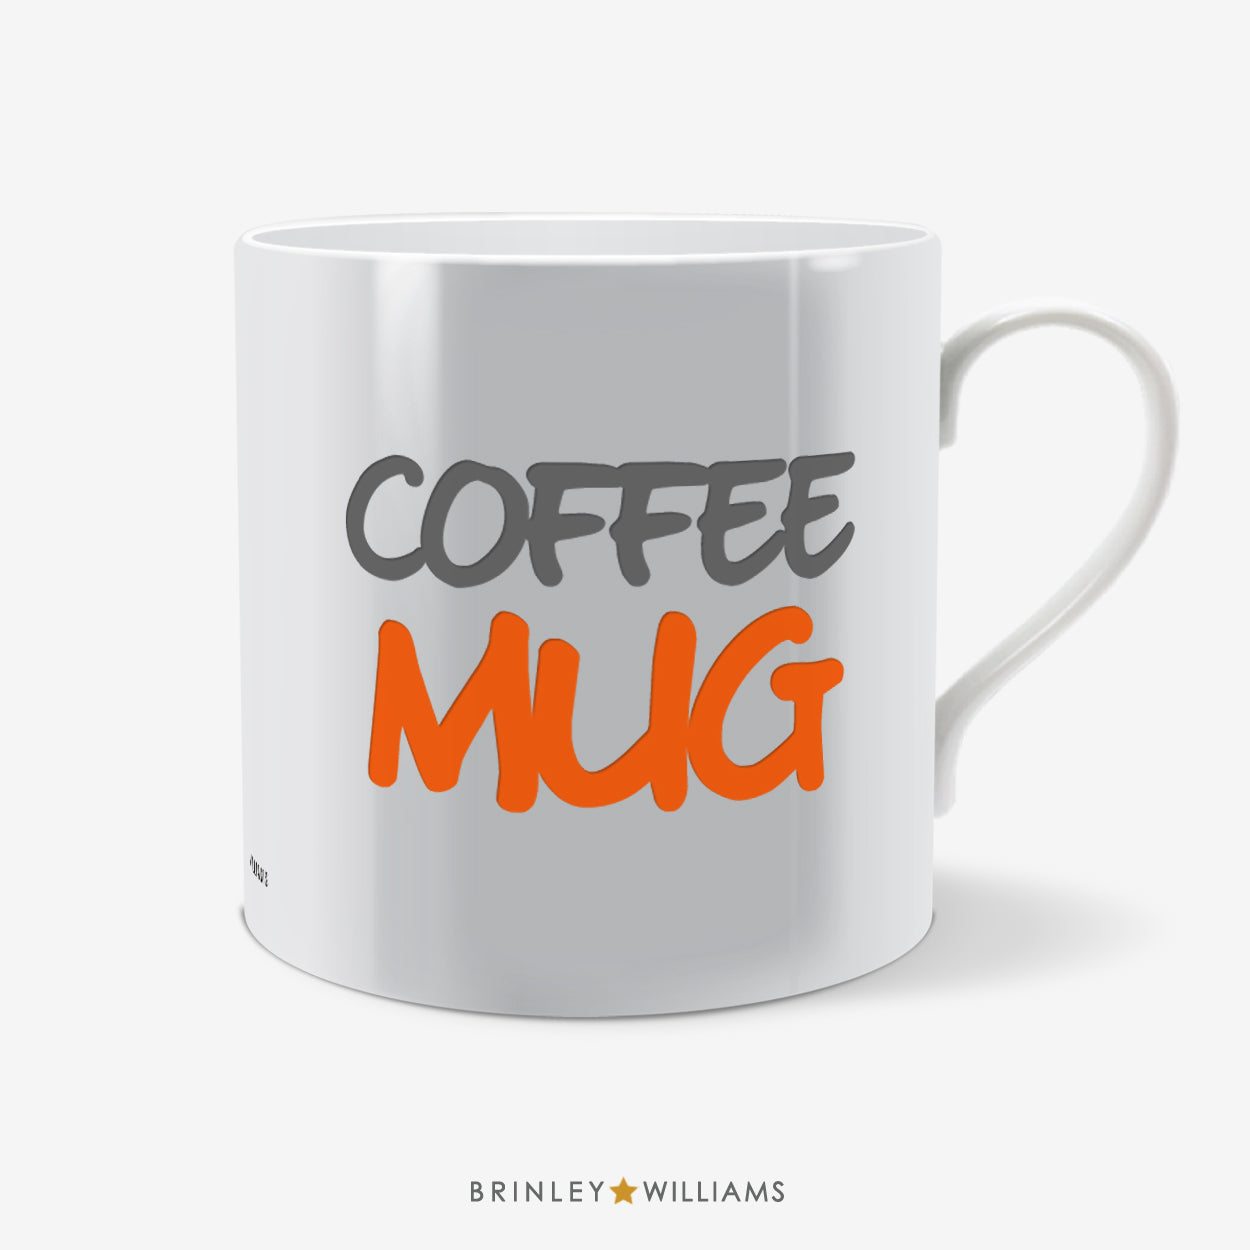 Coffee Mug Fun Mug - Orange